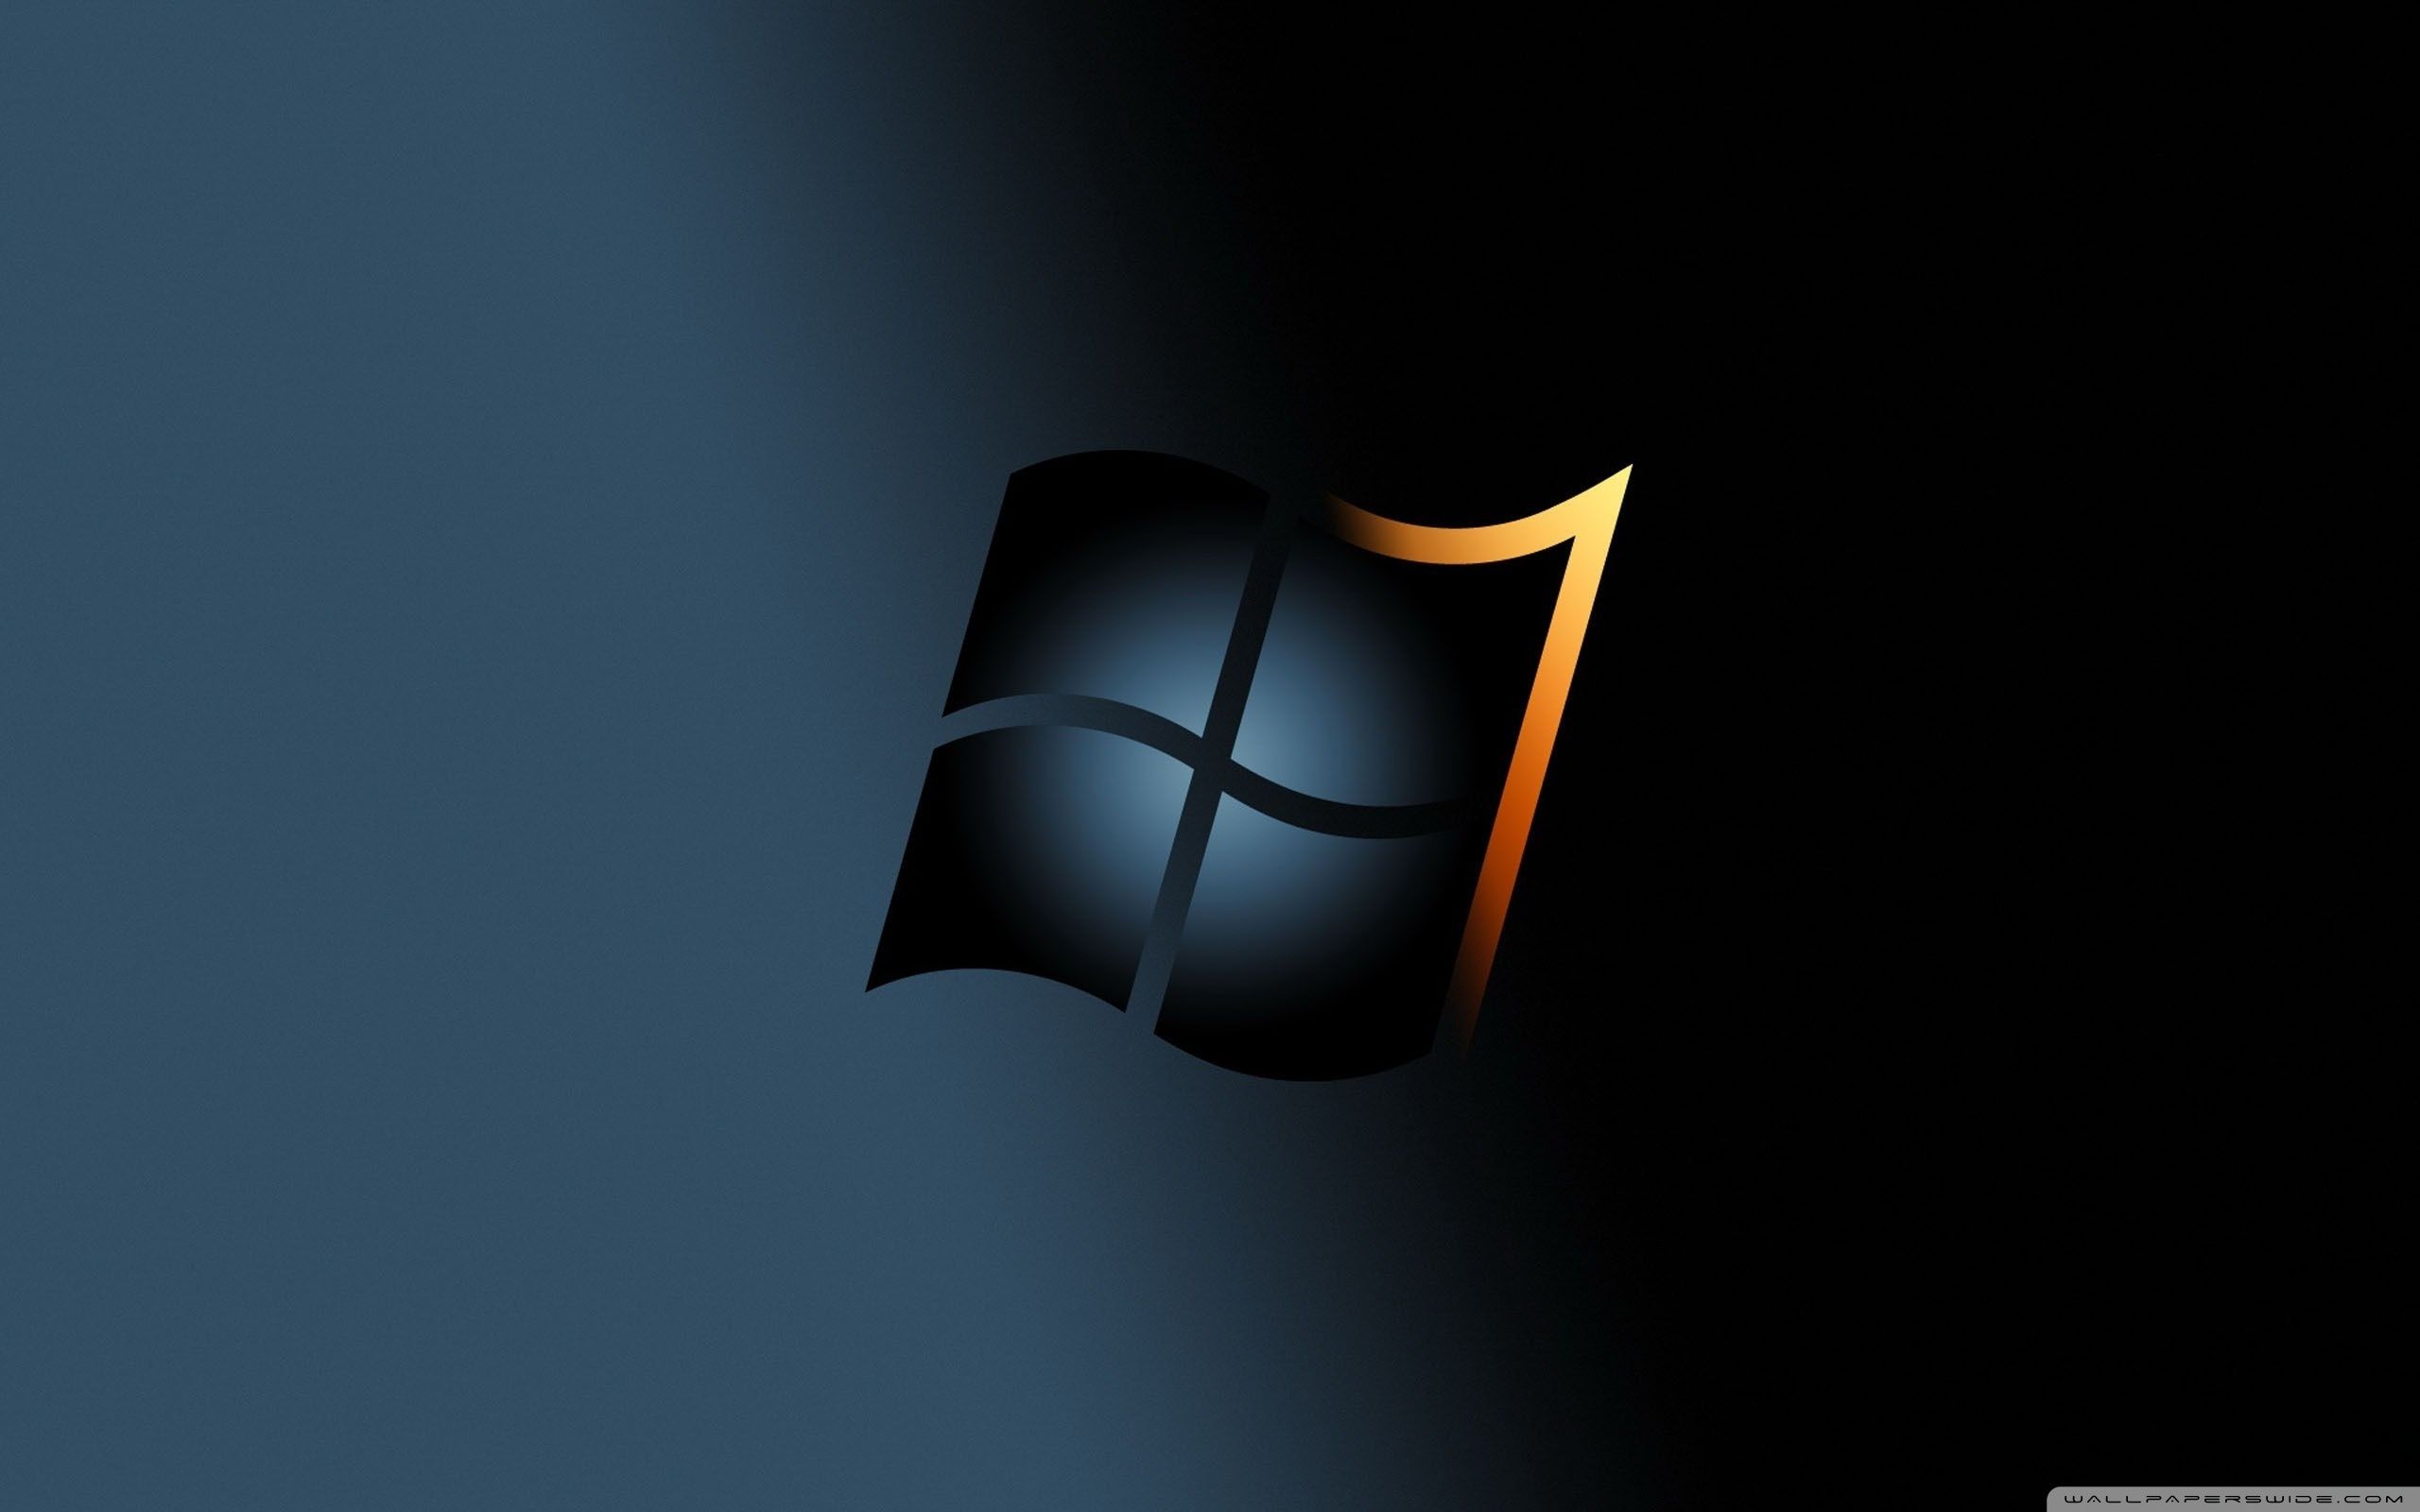 Hình nền desktop Windows đen trắng: Đem tinh thần đơn giản và hiện đại vào desktop của bạn với hình nền Windows đen trắng. Với sự đơn giản của một bức tranh đen trắng, bạn sẽ tận hưởng được một không gian làm việc desktop thanh lịch và tinh tế, phù hợp với nhiều phong cách và sở thích của người dùng.